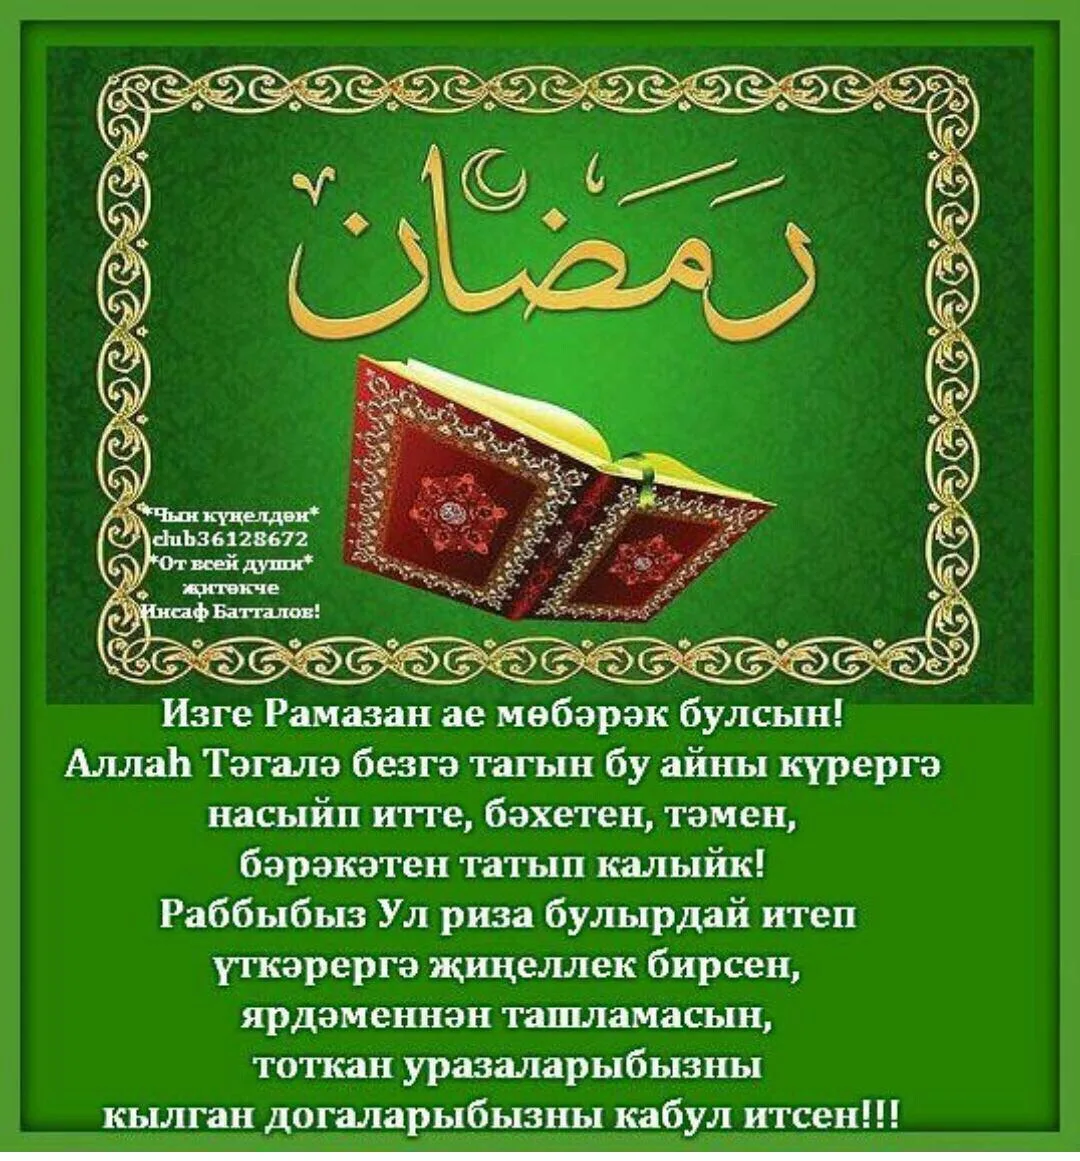 Картинки ураза байрам поздравление на татарском языке. Поздравления с татарскими праздниками. Ураза байрам. Поздравление с кража байран. Ураза-байрам поздравления.